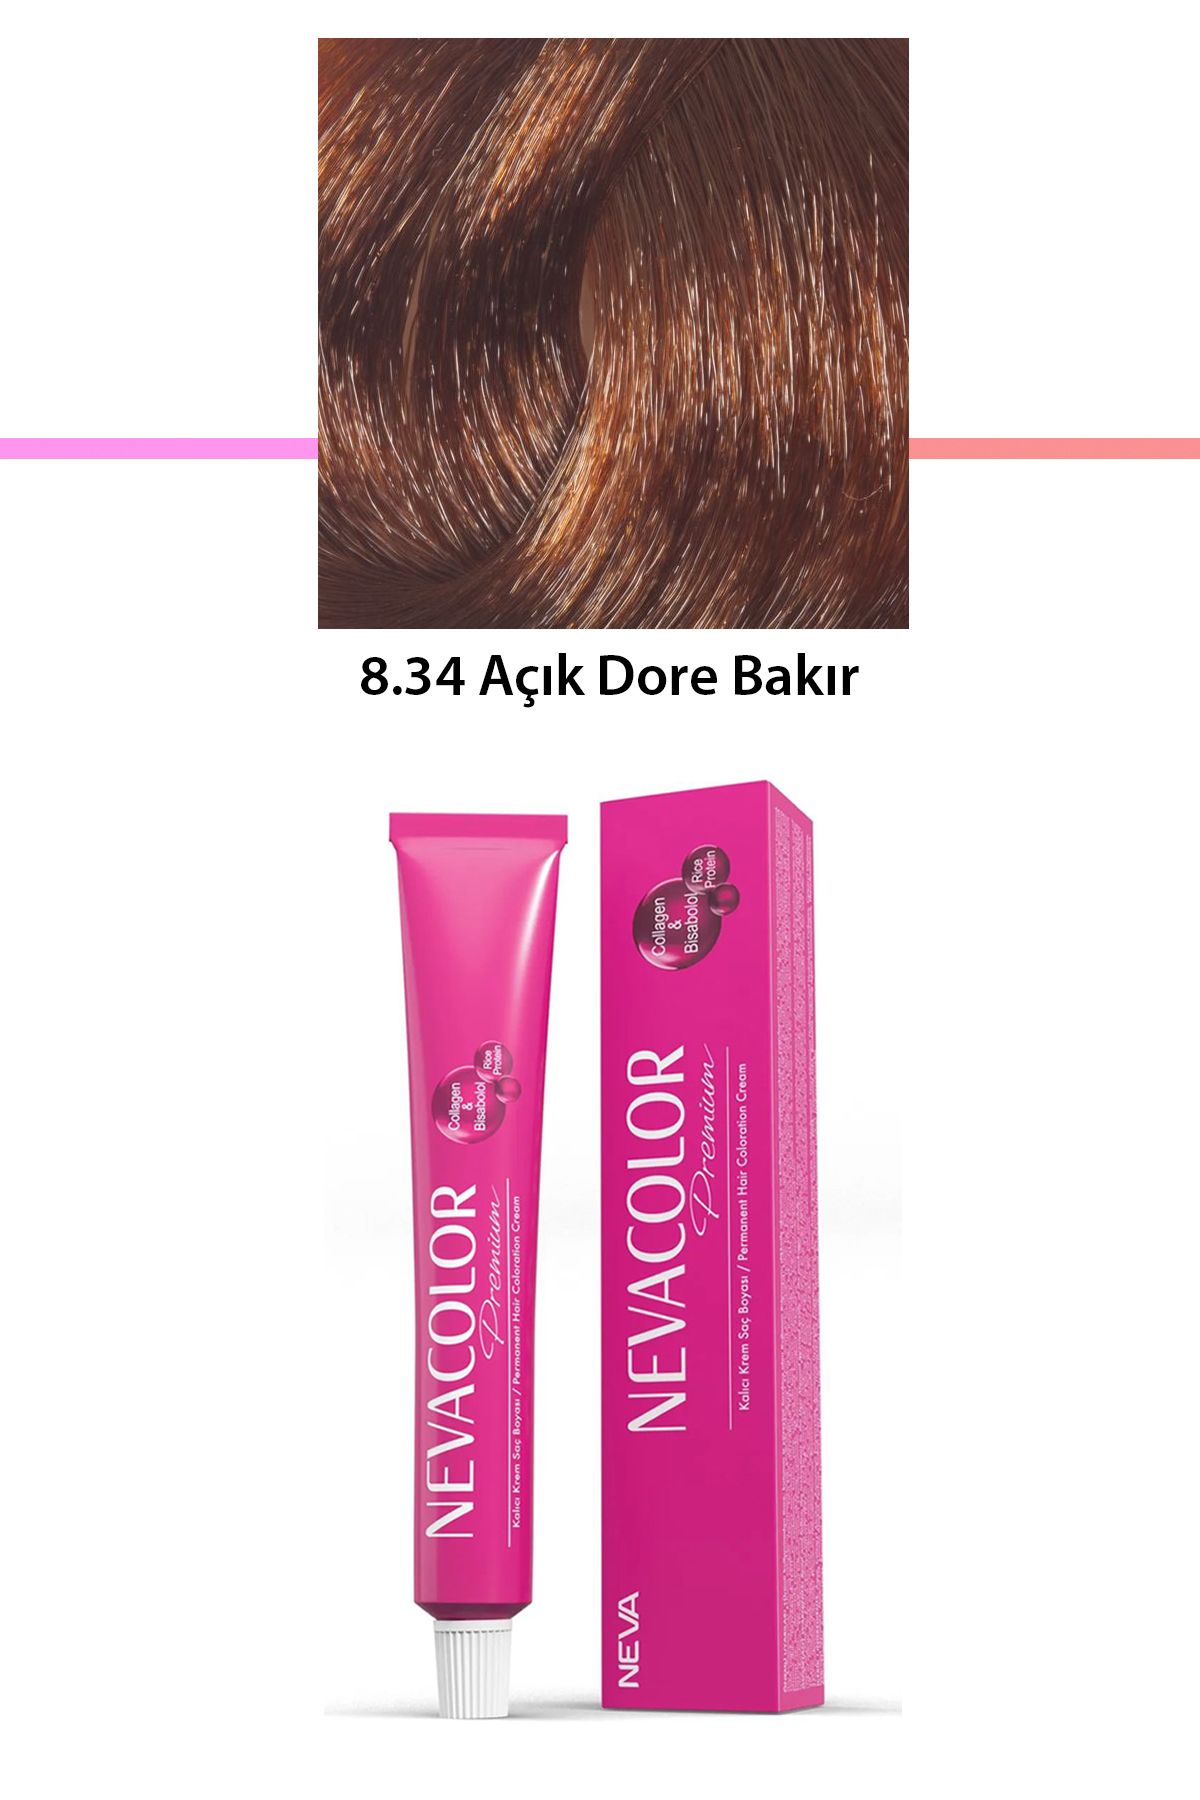 Neva Color Premium 8.34 Açık Dore Bakır - Kalıcı Krem Saç Boyası 50 g Tüp